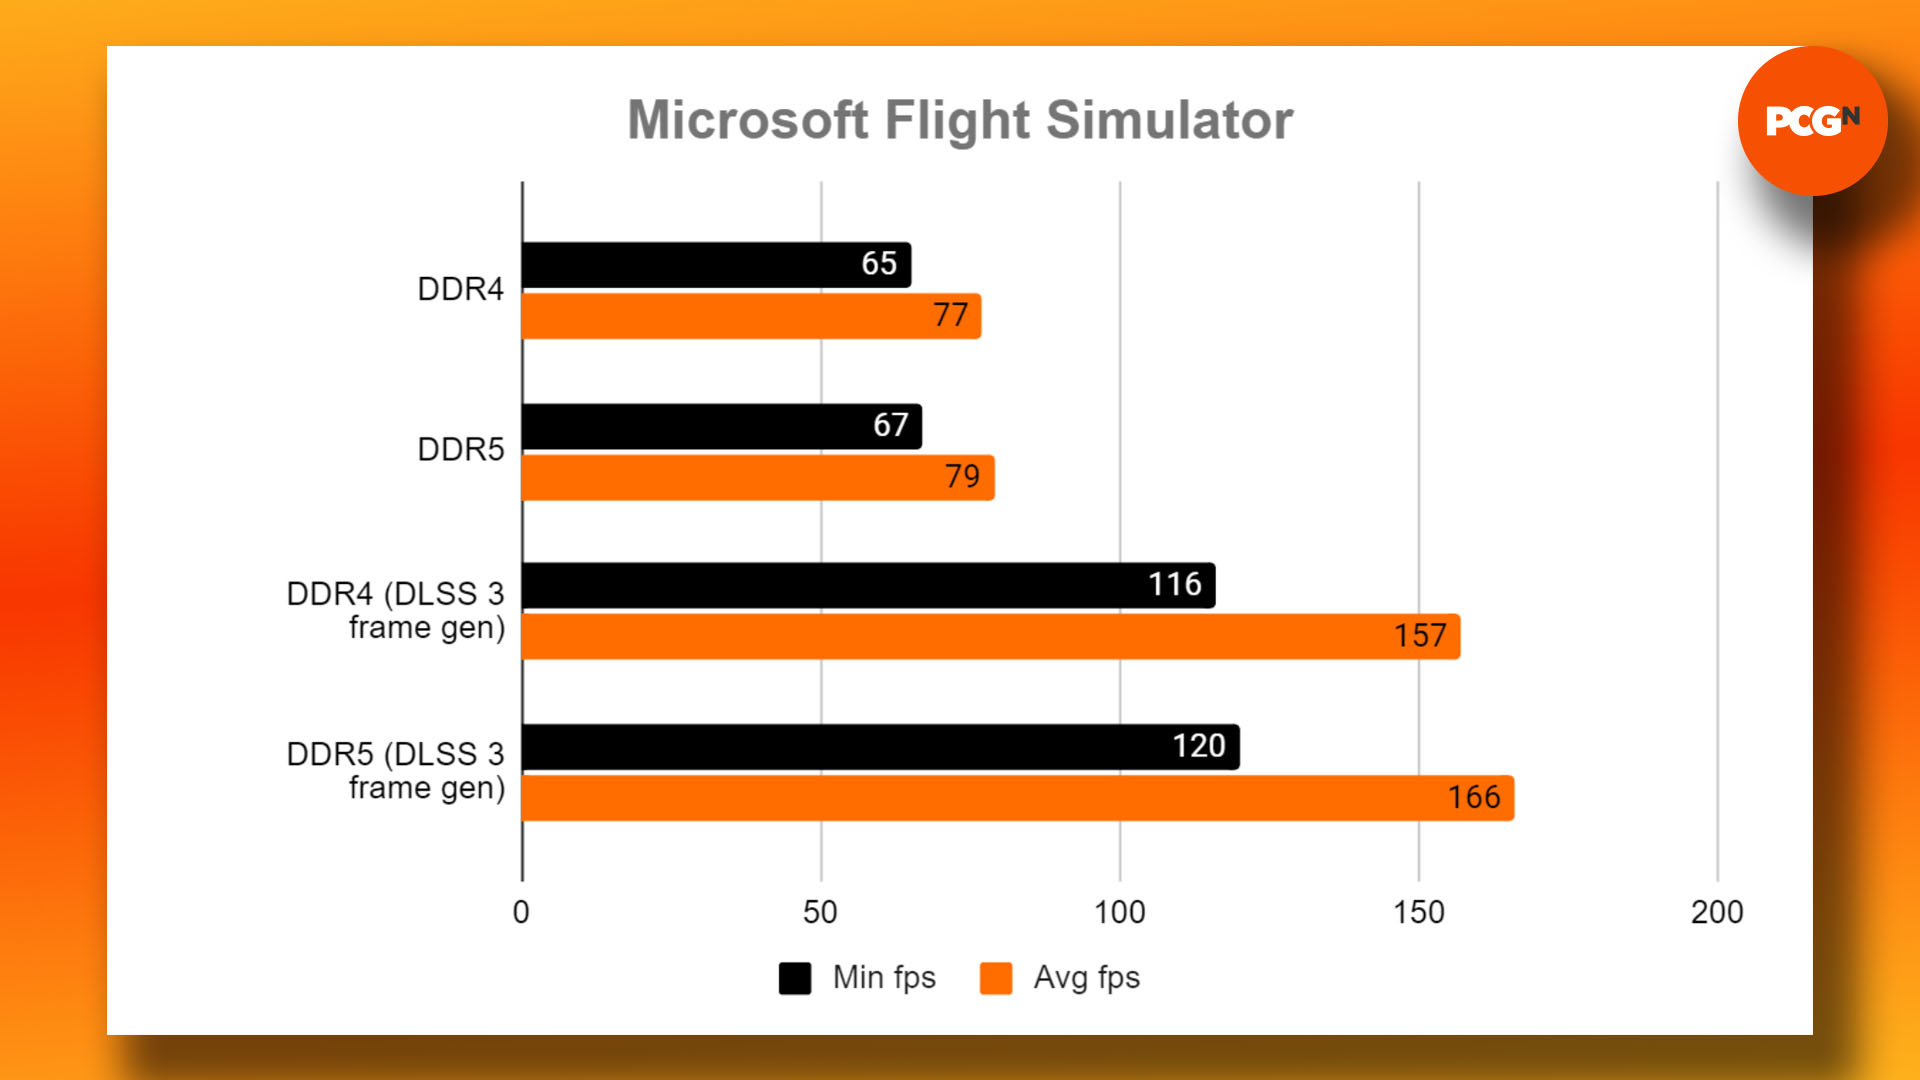 DDR4 ve DDR5 - oyun için hangi RAM'in satın alınması gerektiği: Microsoft Flight Simulator